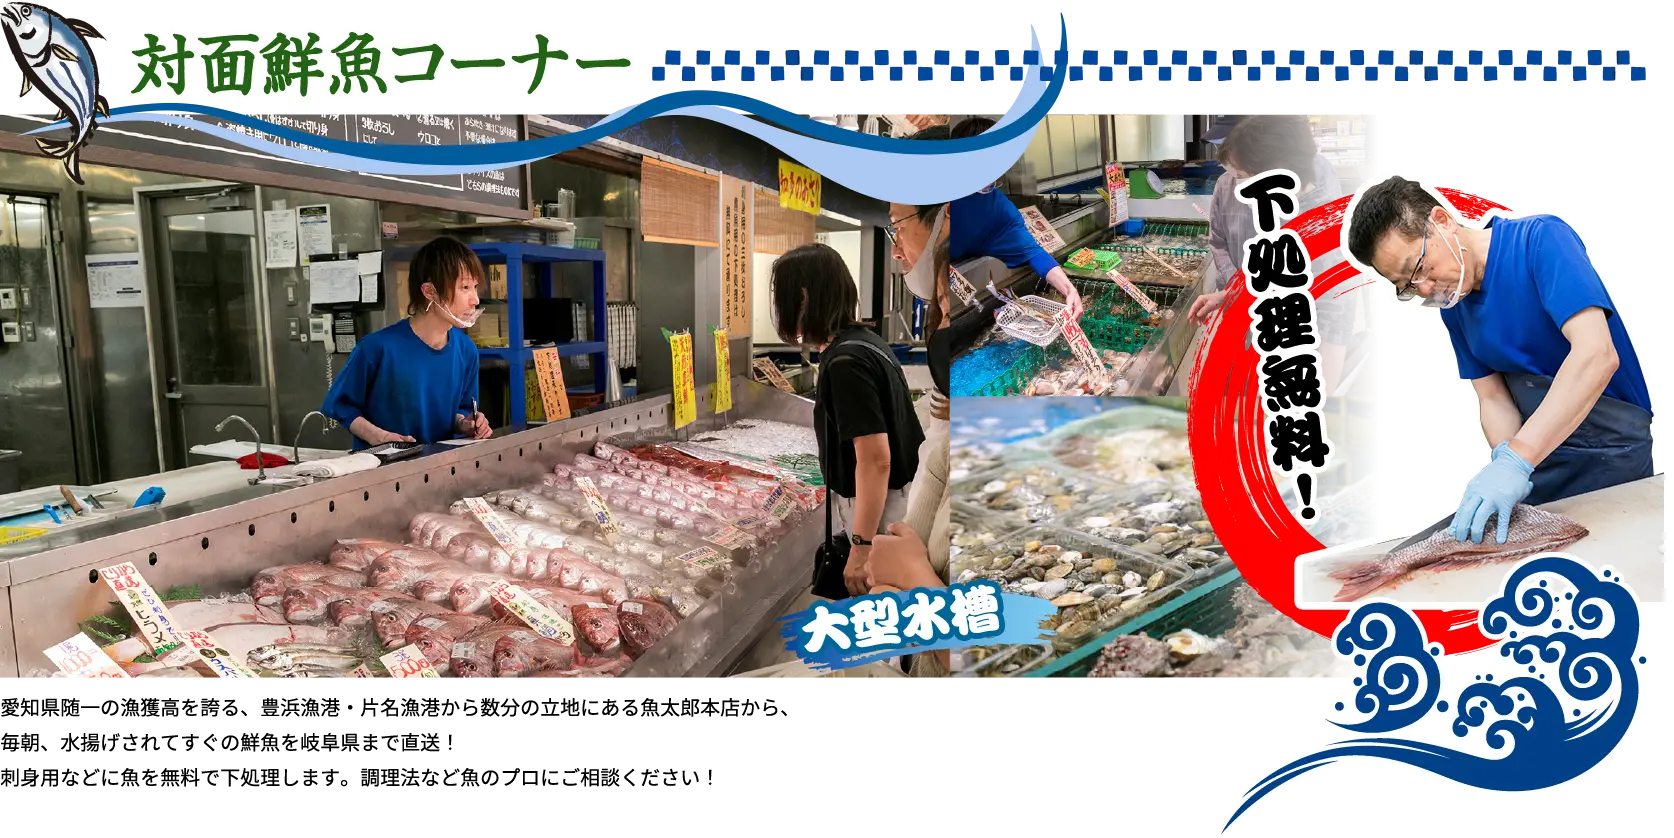 下処理無料！ 愛知県随一の漁獲高を誇る、豊浜漁港・片名漁港から数分の立地にある魚太郎本店から、毎朝、水揚げされてすぐの鮮魚を岐阜県まで直送！刺身用などに魚を無料で下処理します。調理法など魚のプロにご相談ください！